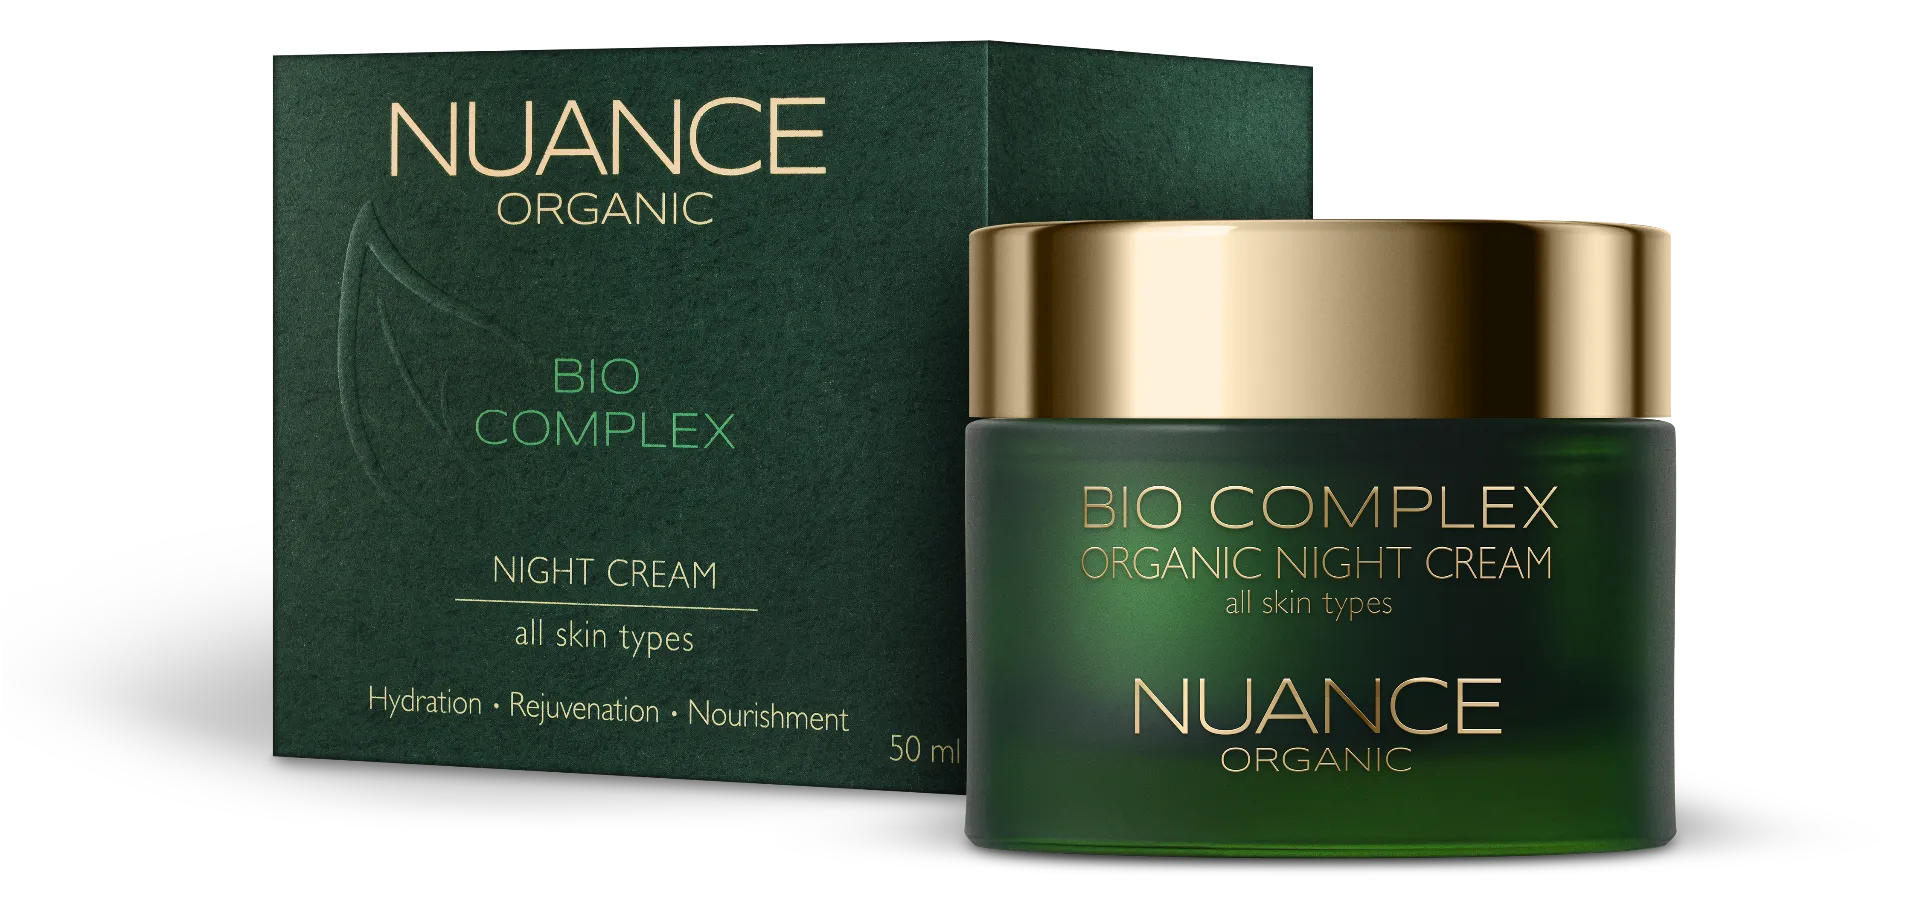 Nuance Organic Bio Complex, krem na noc do wszystkich rodzajów skóry, 50 ml